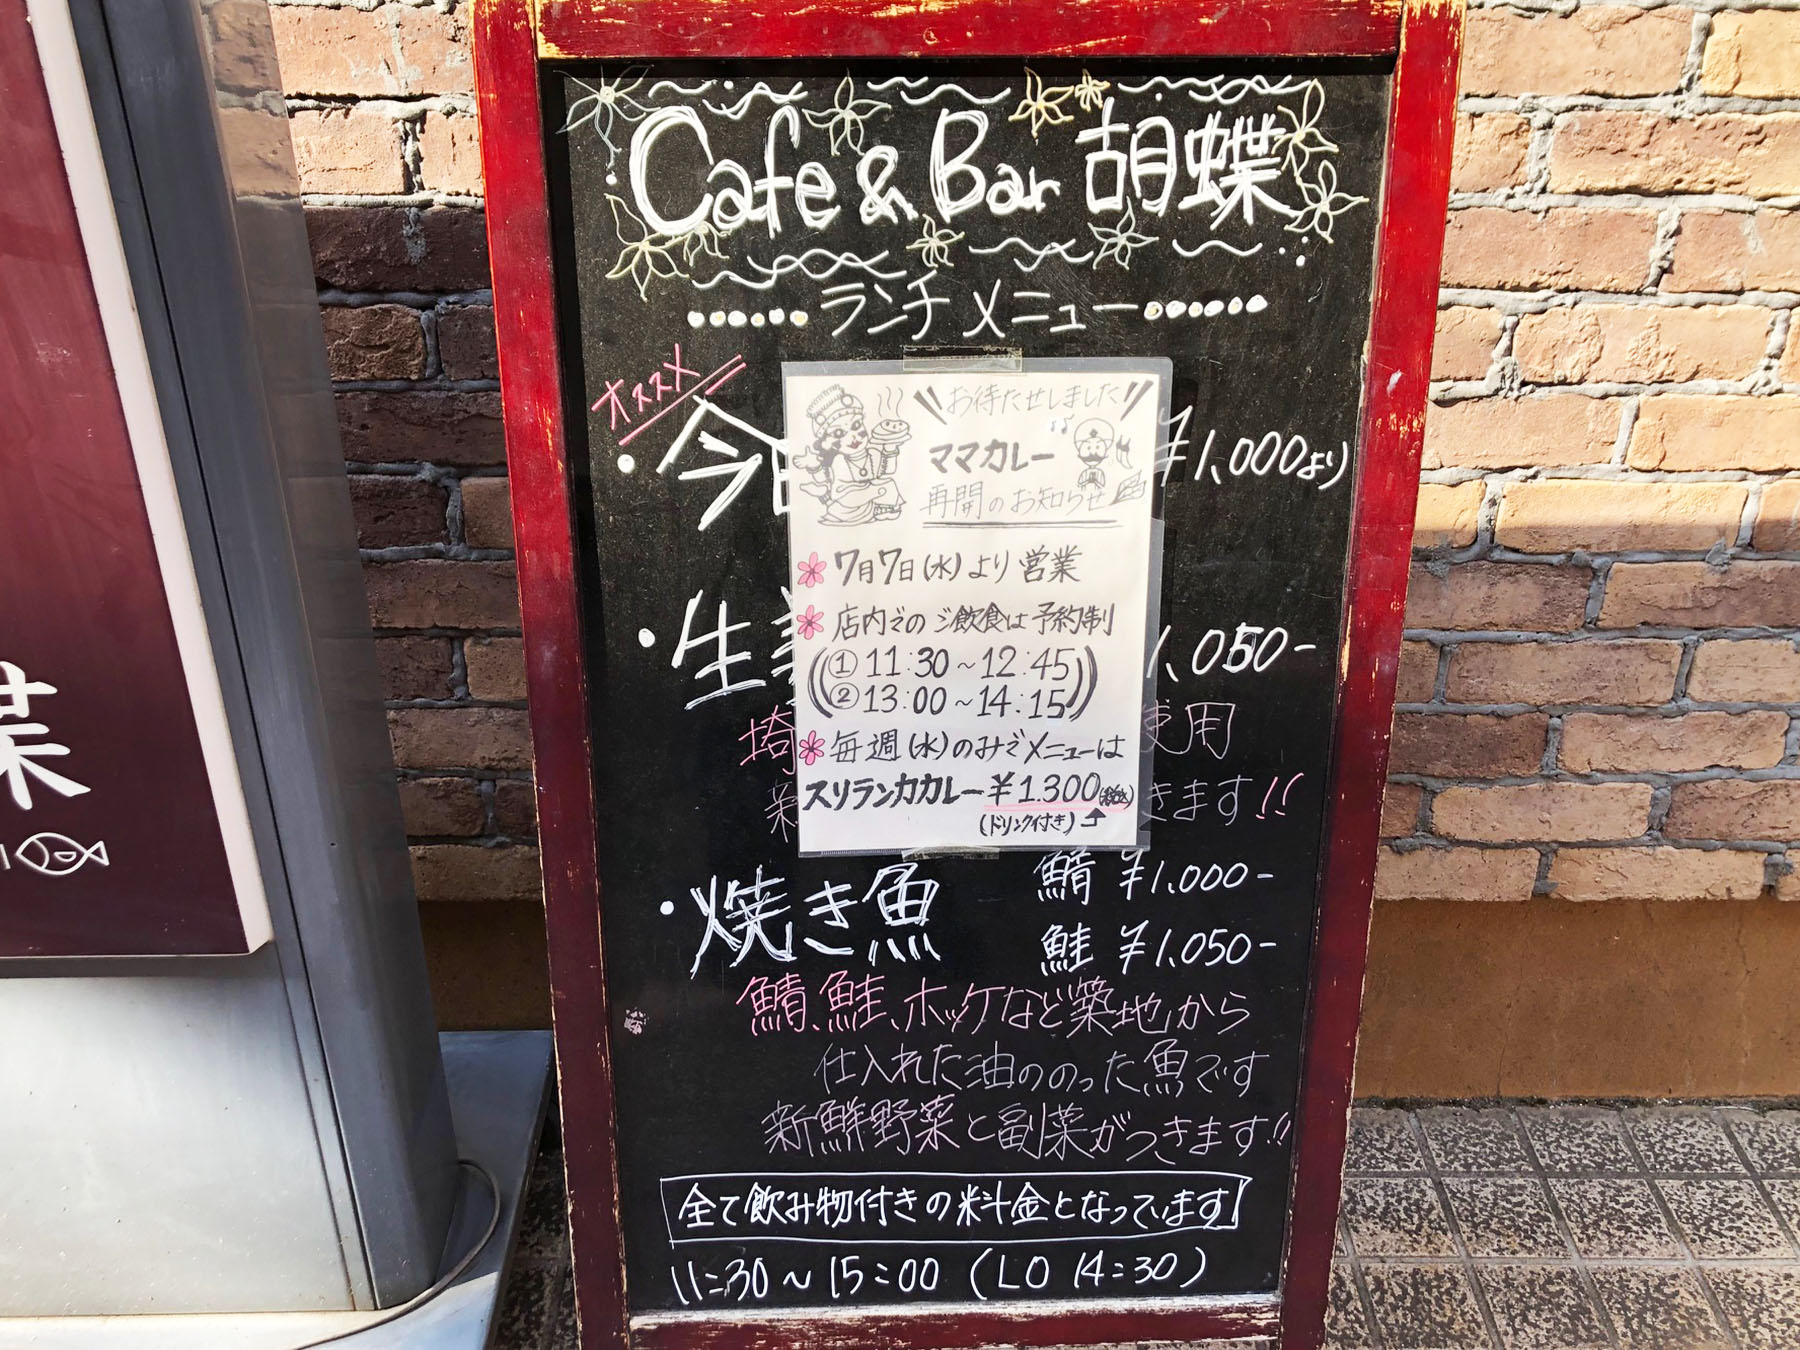 Cafe&Bar胡蝶の立て看板